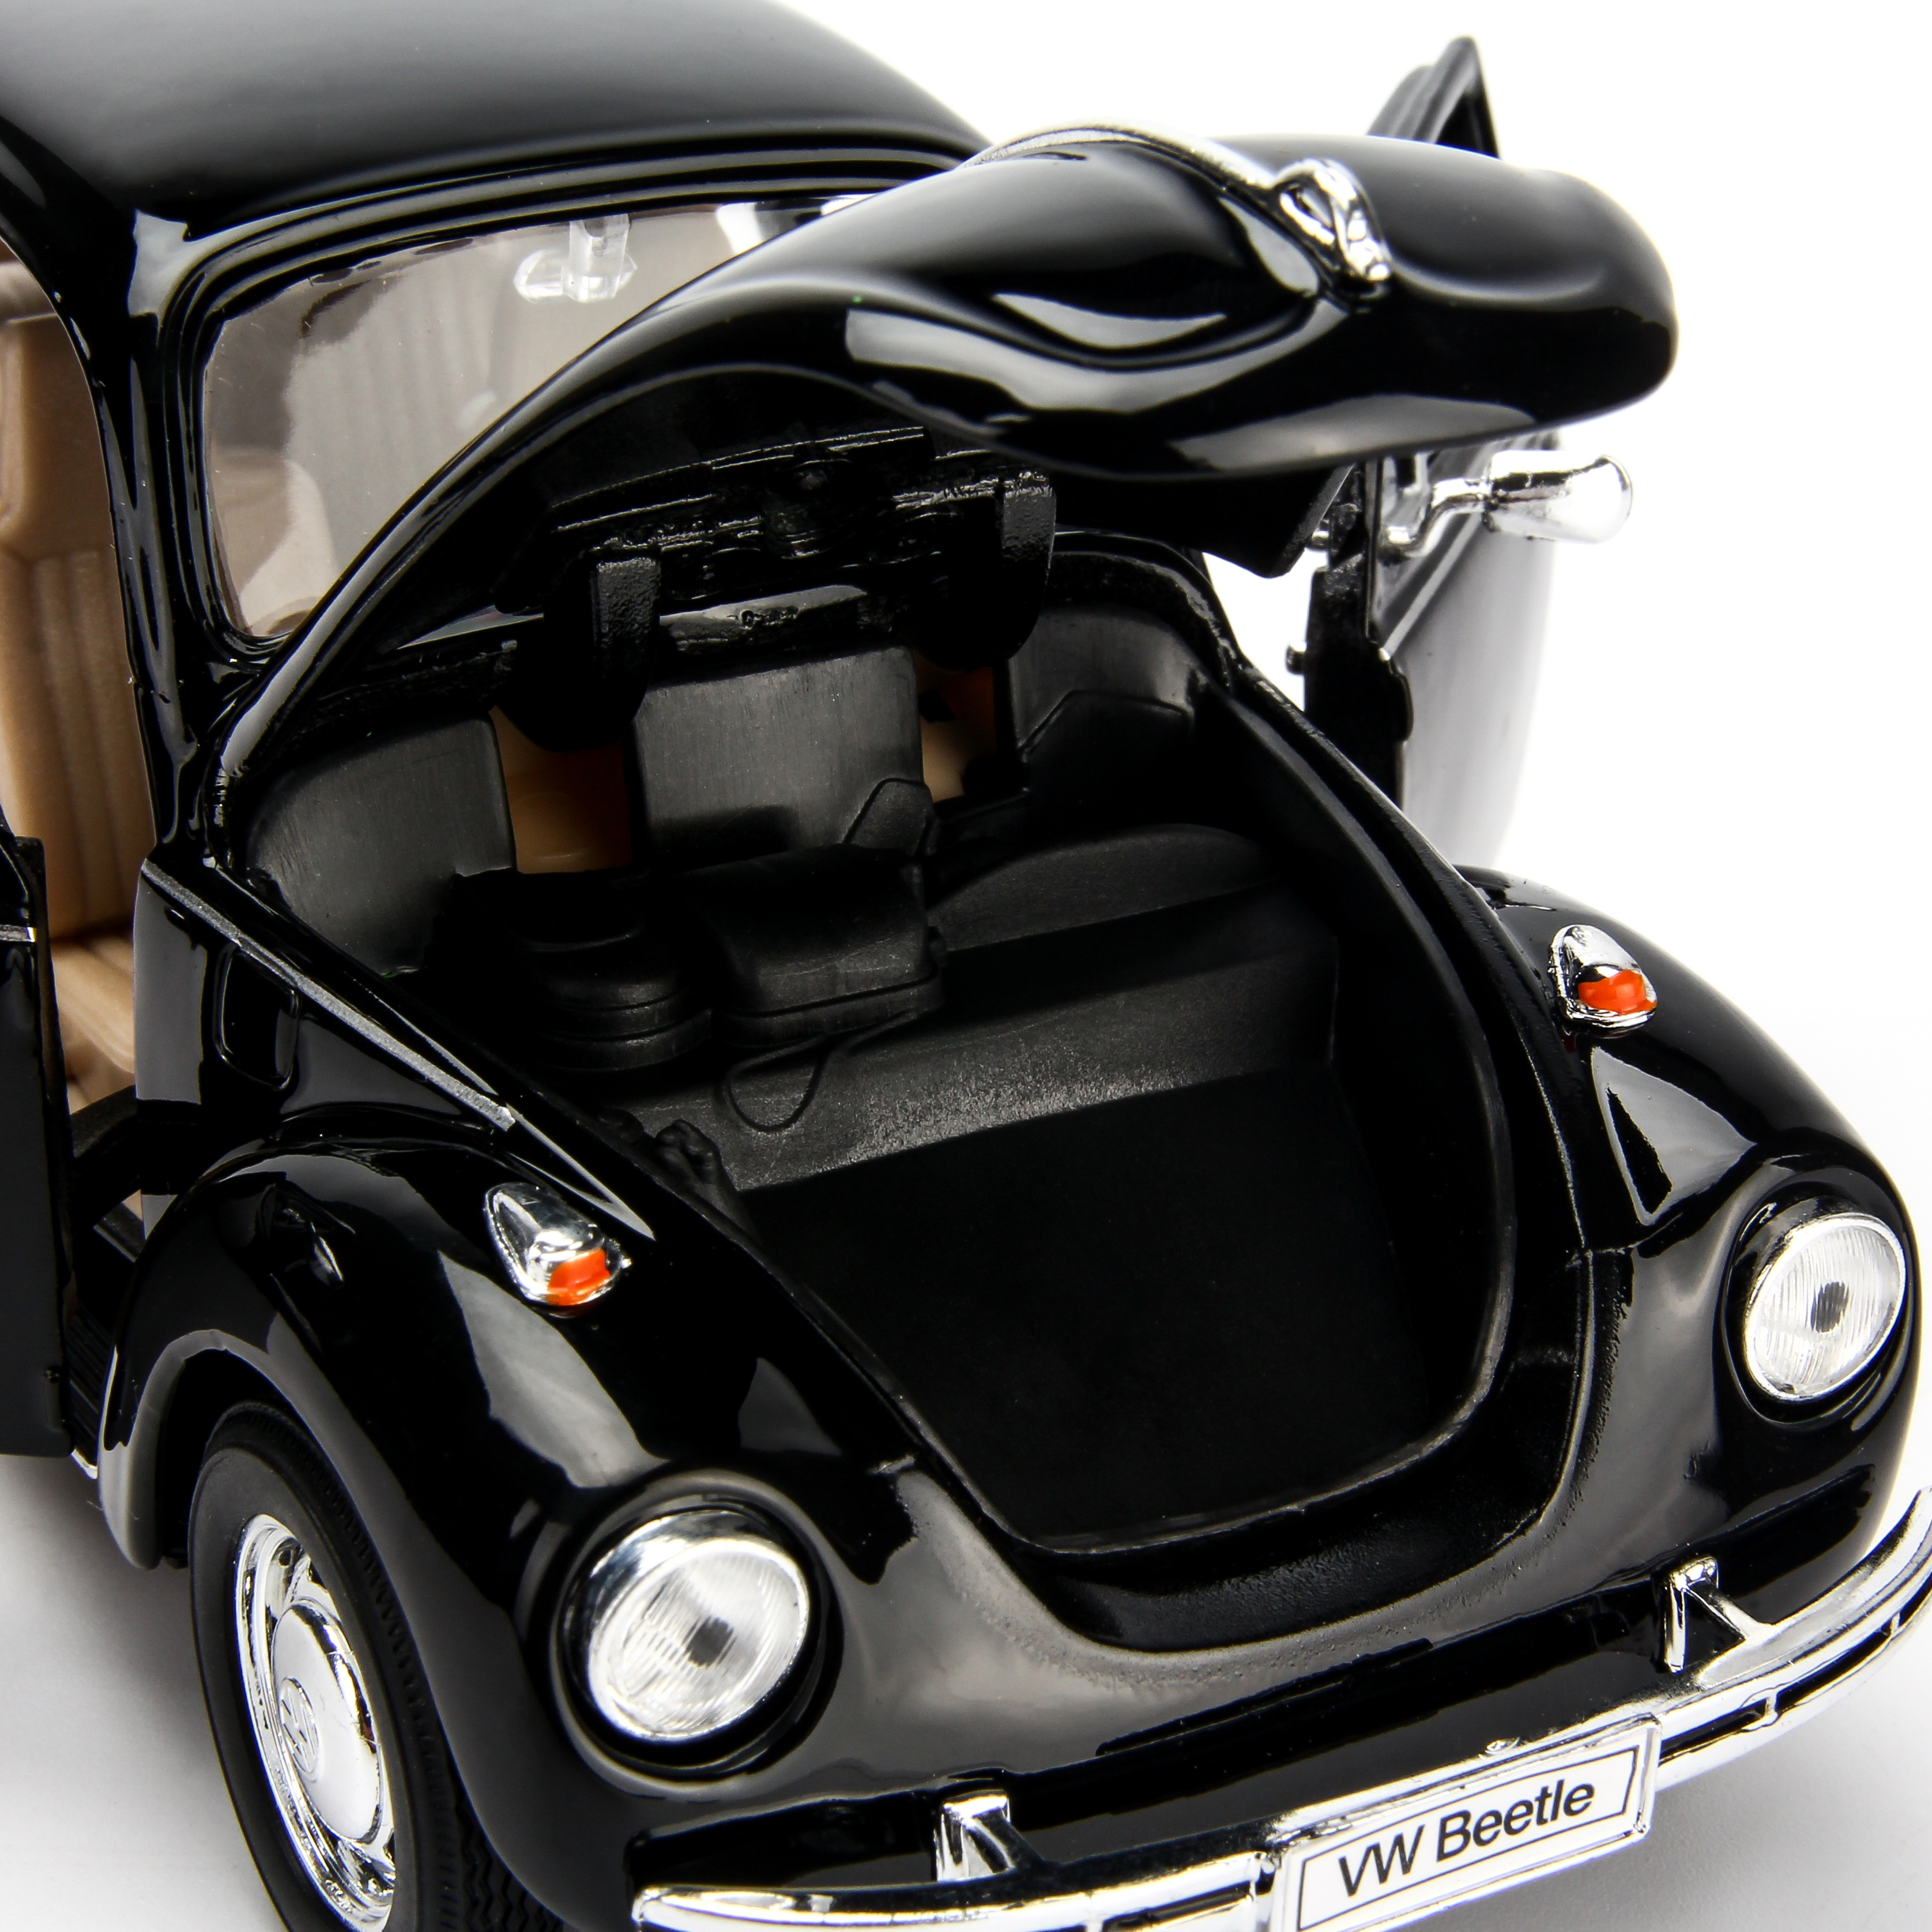 Mô hình xe Volkswagen Classic Beetle Black 1:24 Welly - 22436